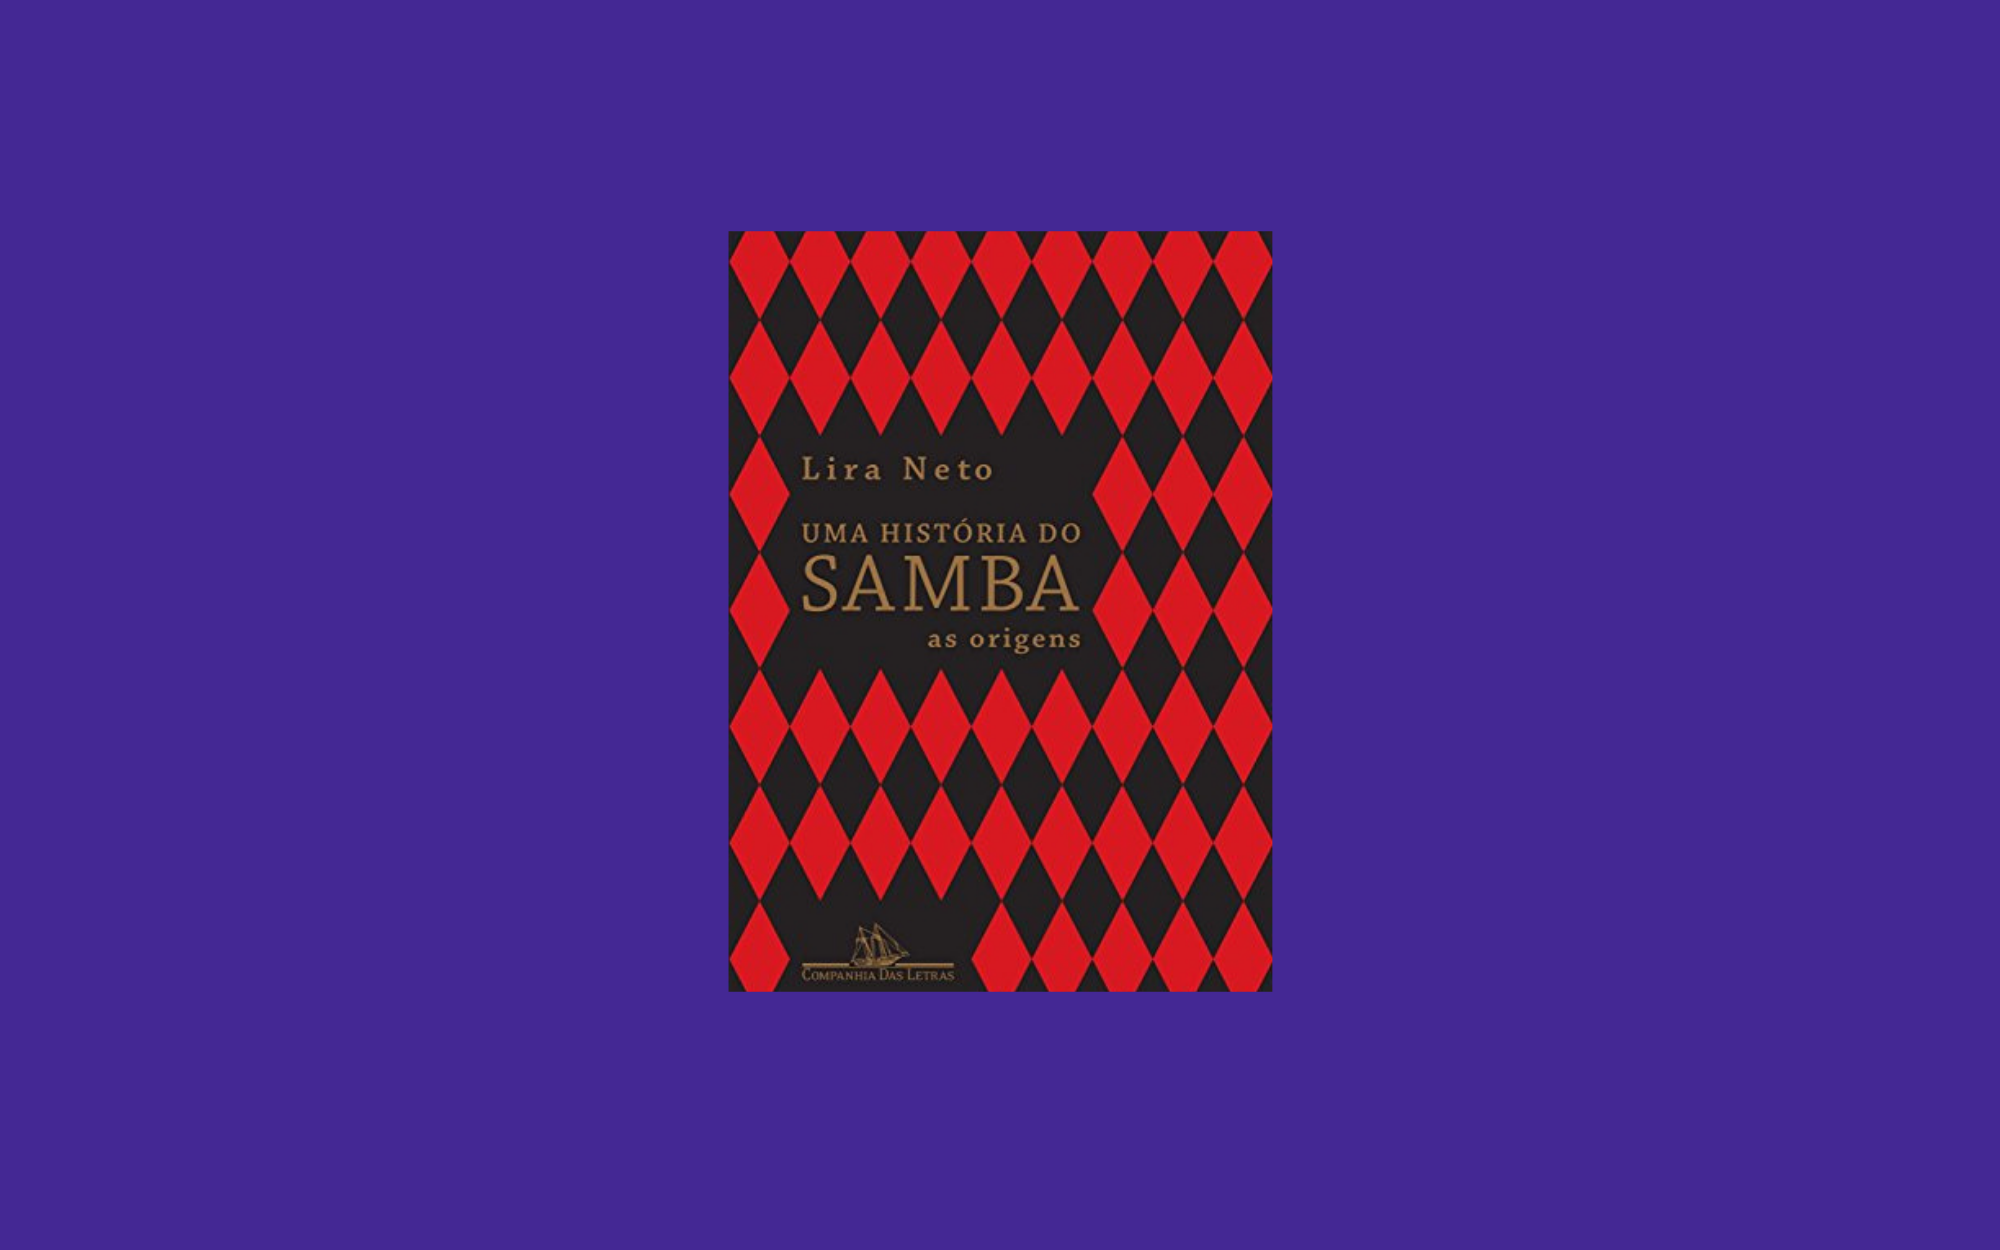 Capa do livro Uma História do Samba: As Origens (2017), por Lira Neto